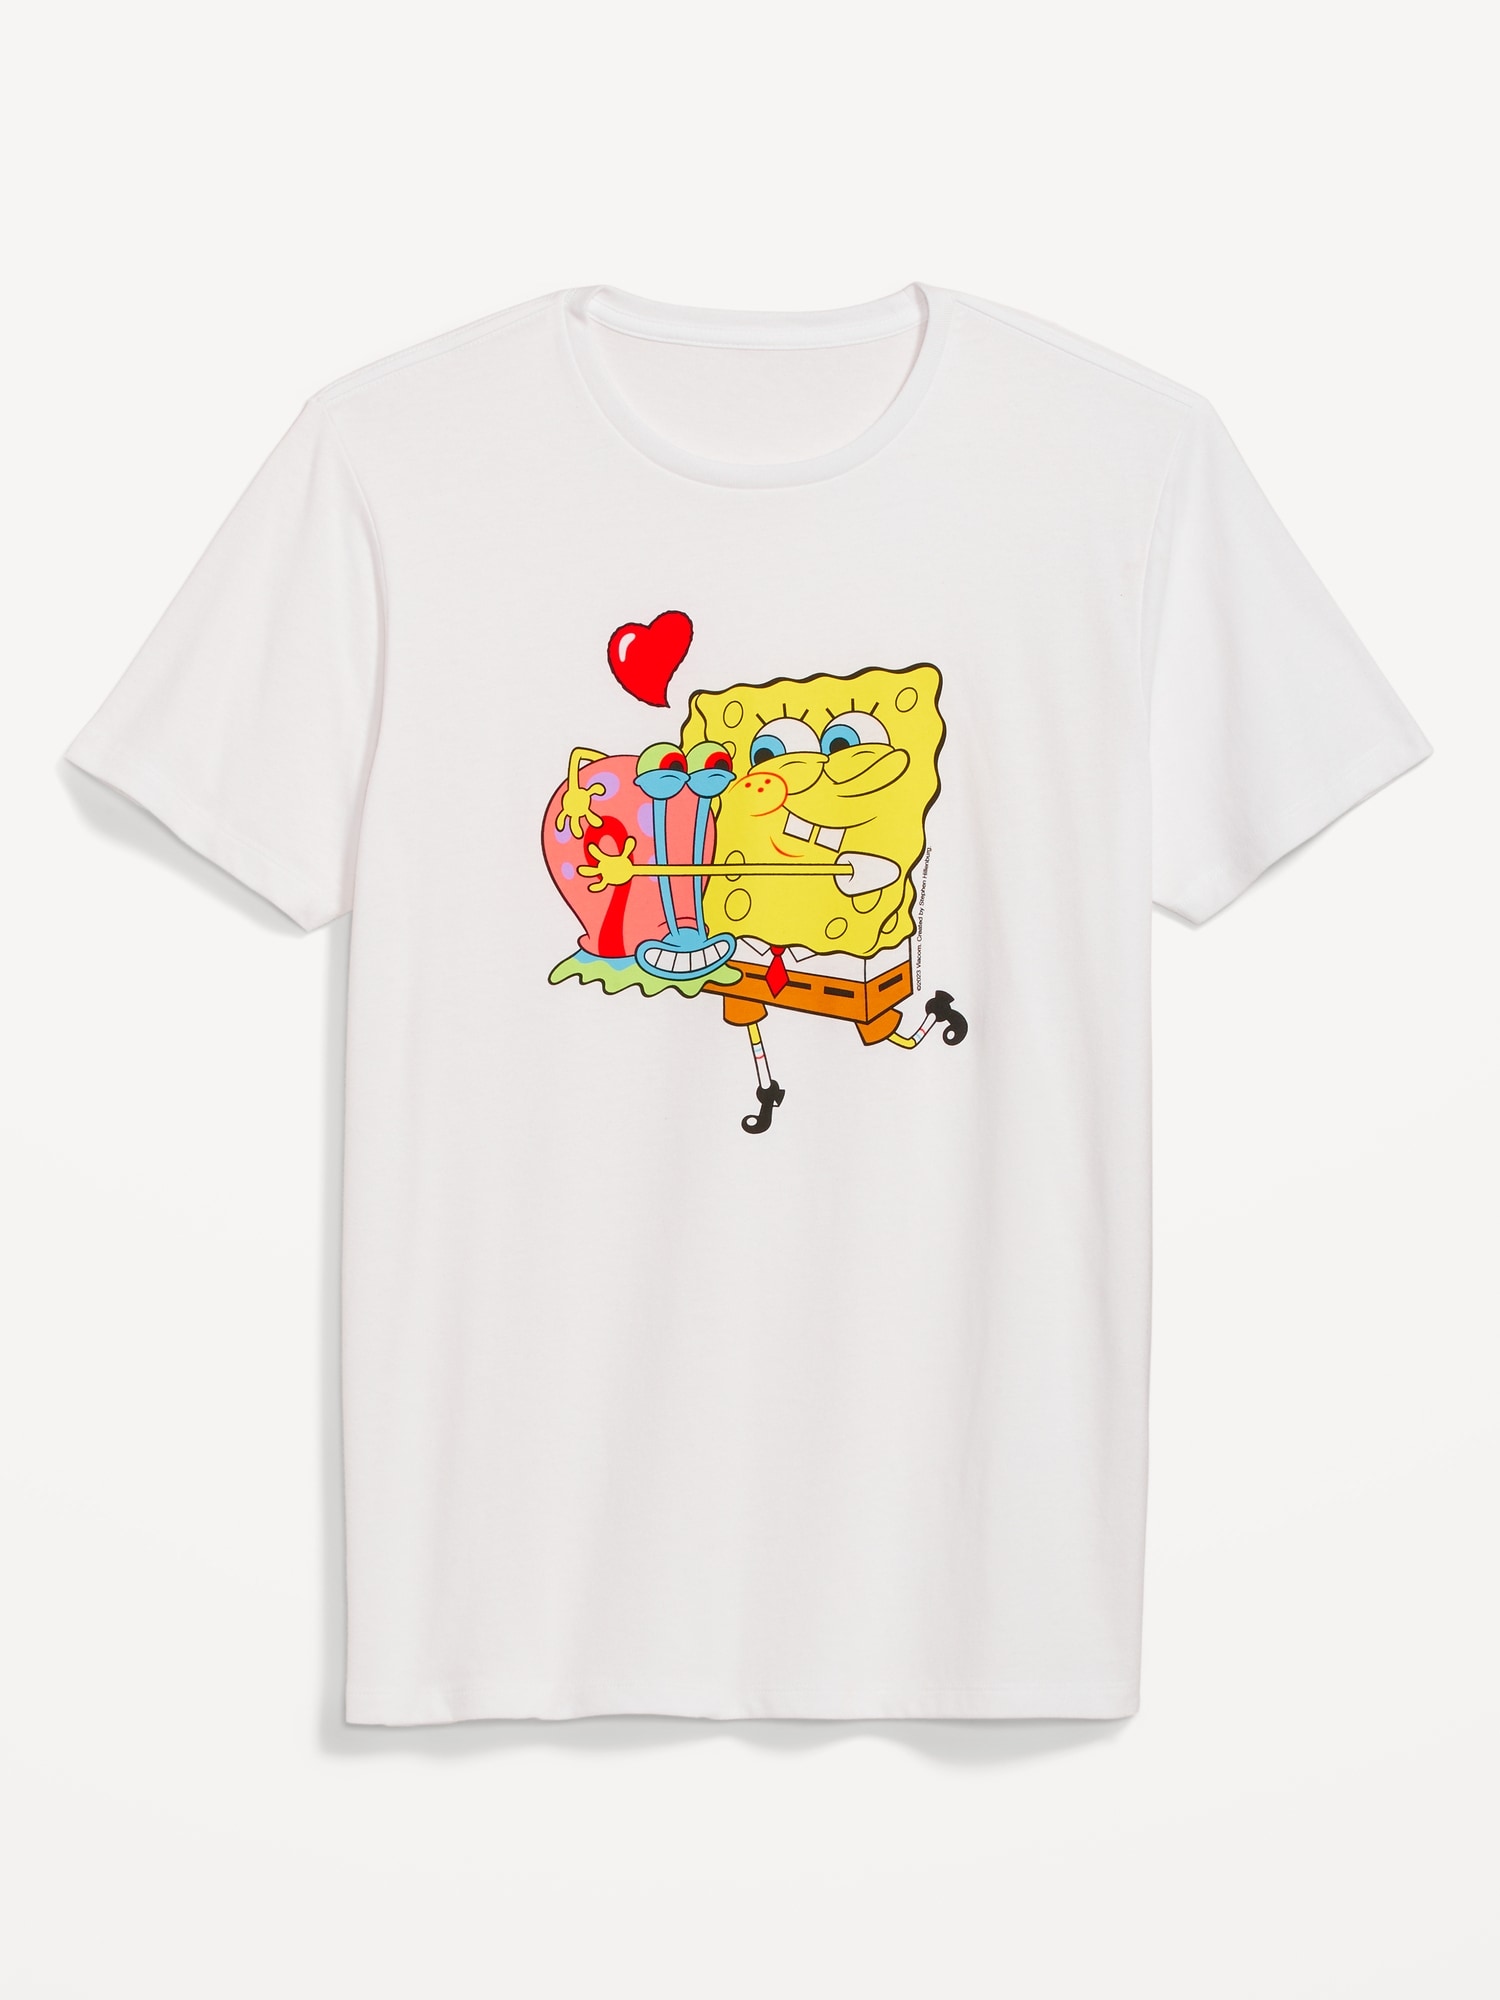 Spongebob Squarepants™ Gender Neutral Valentine T Shirt For Adults Old Navy 8435